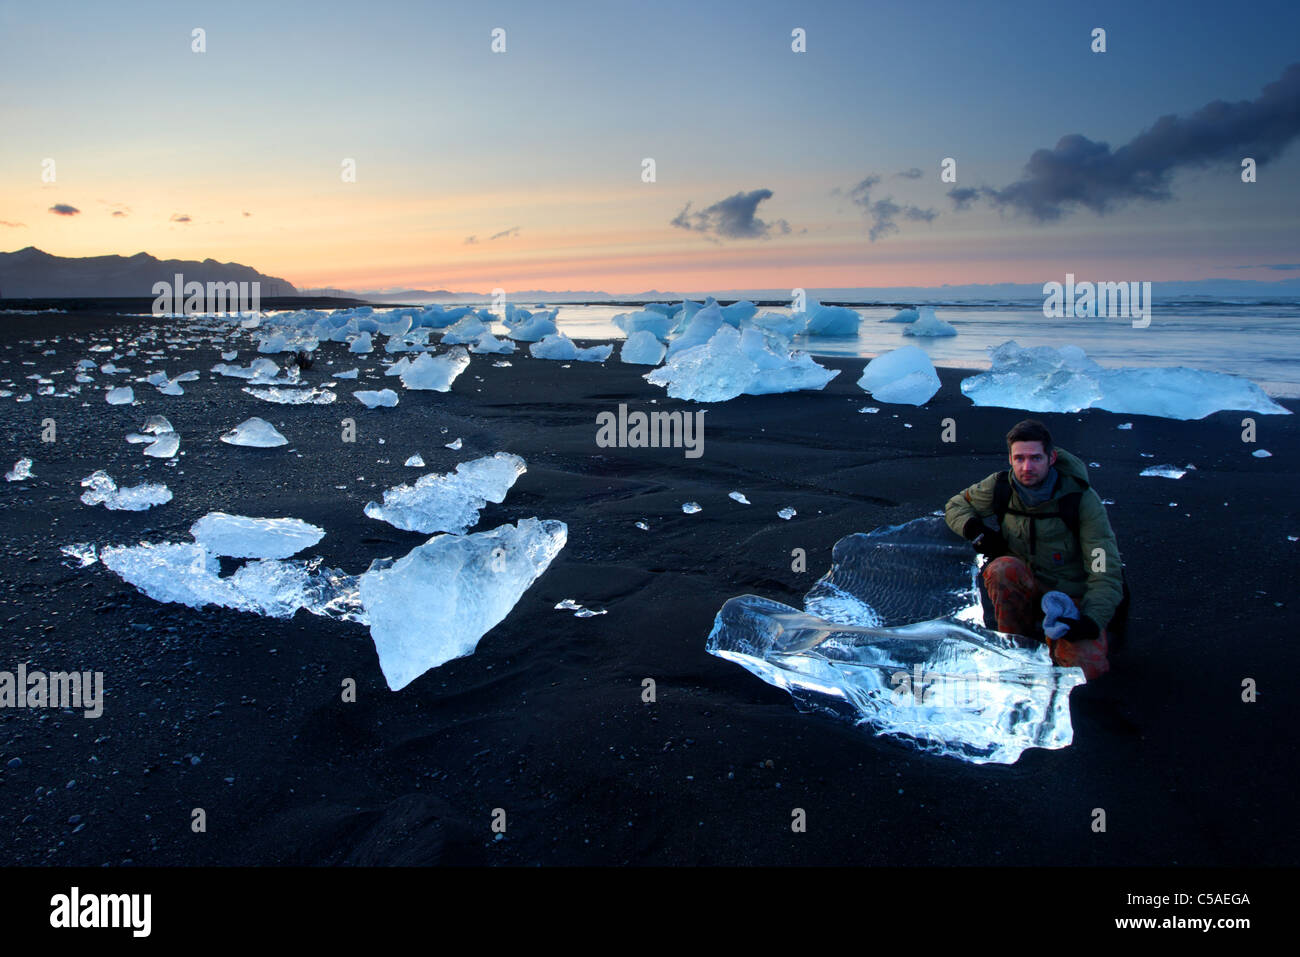 Un homme comme comparaison avec des morceaux de glace de glacier sur la plage de sable noir, l'Islande, Jökulsárlón. Banque D'Images